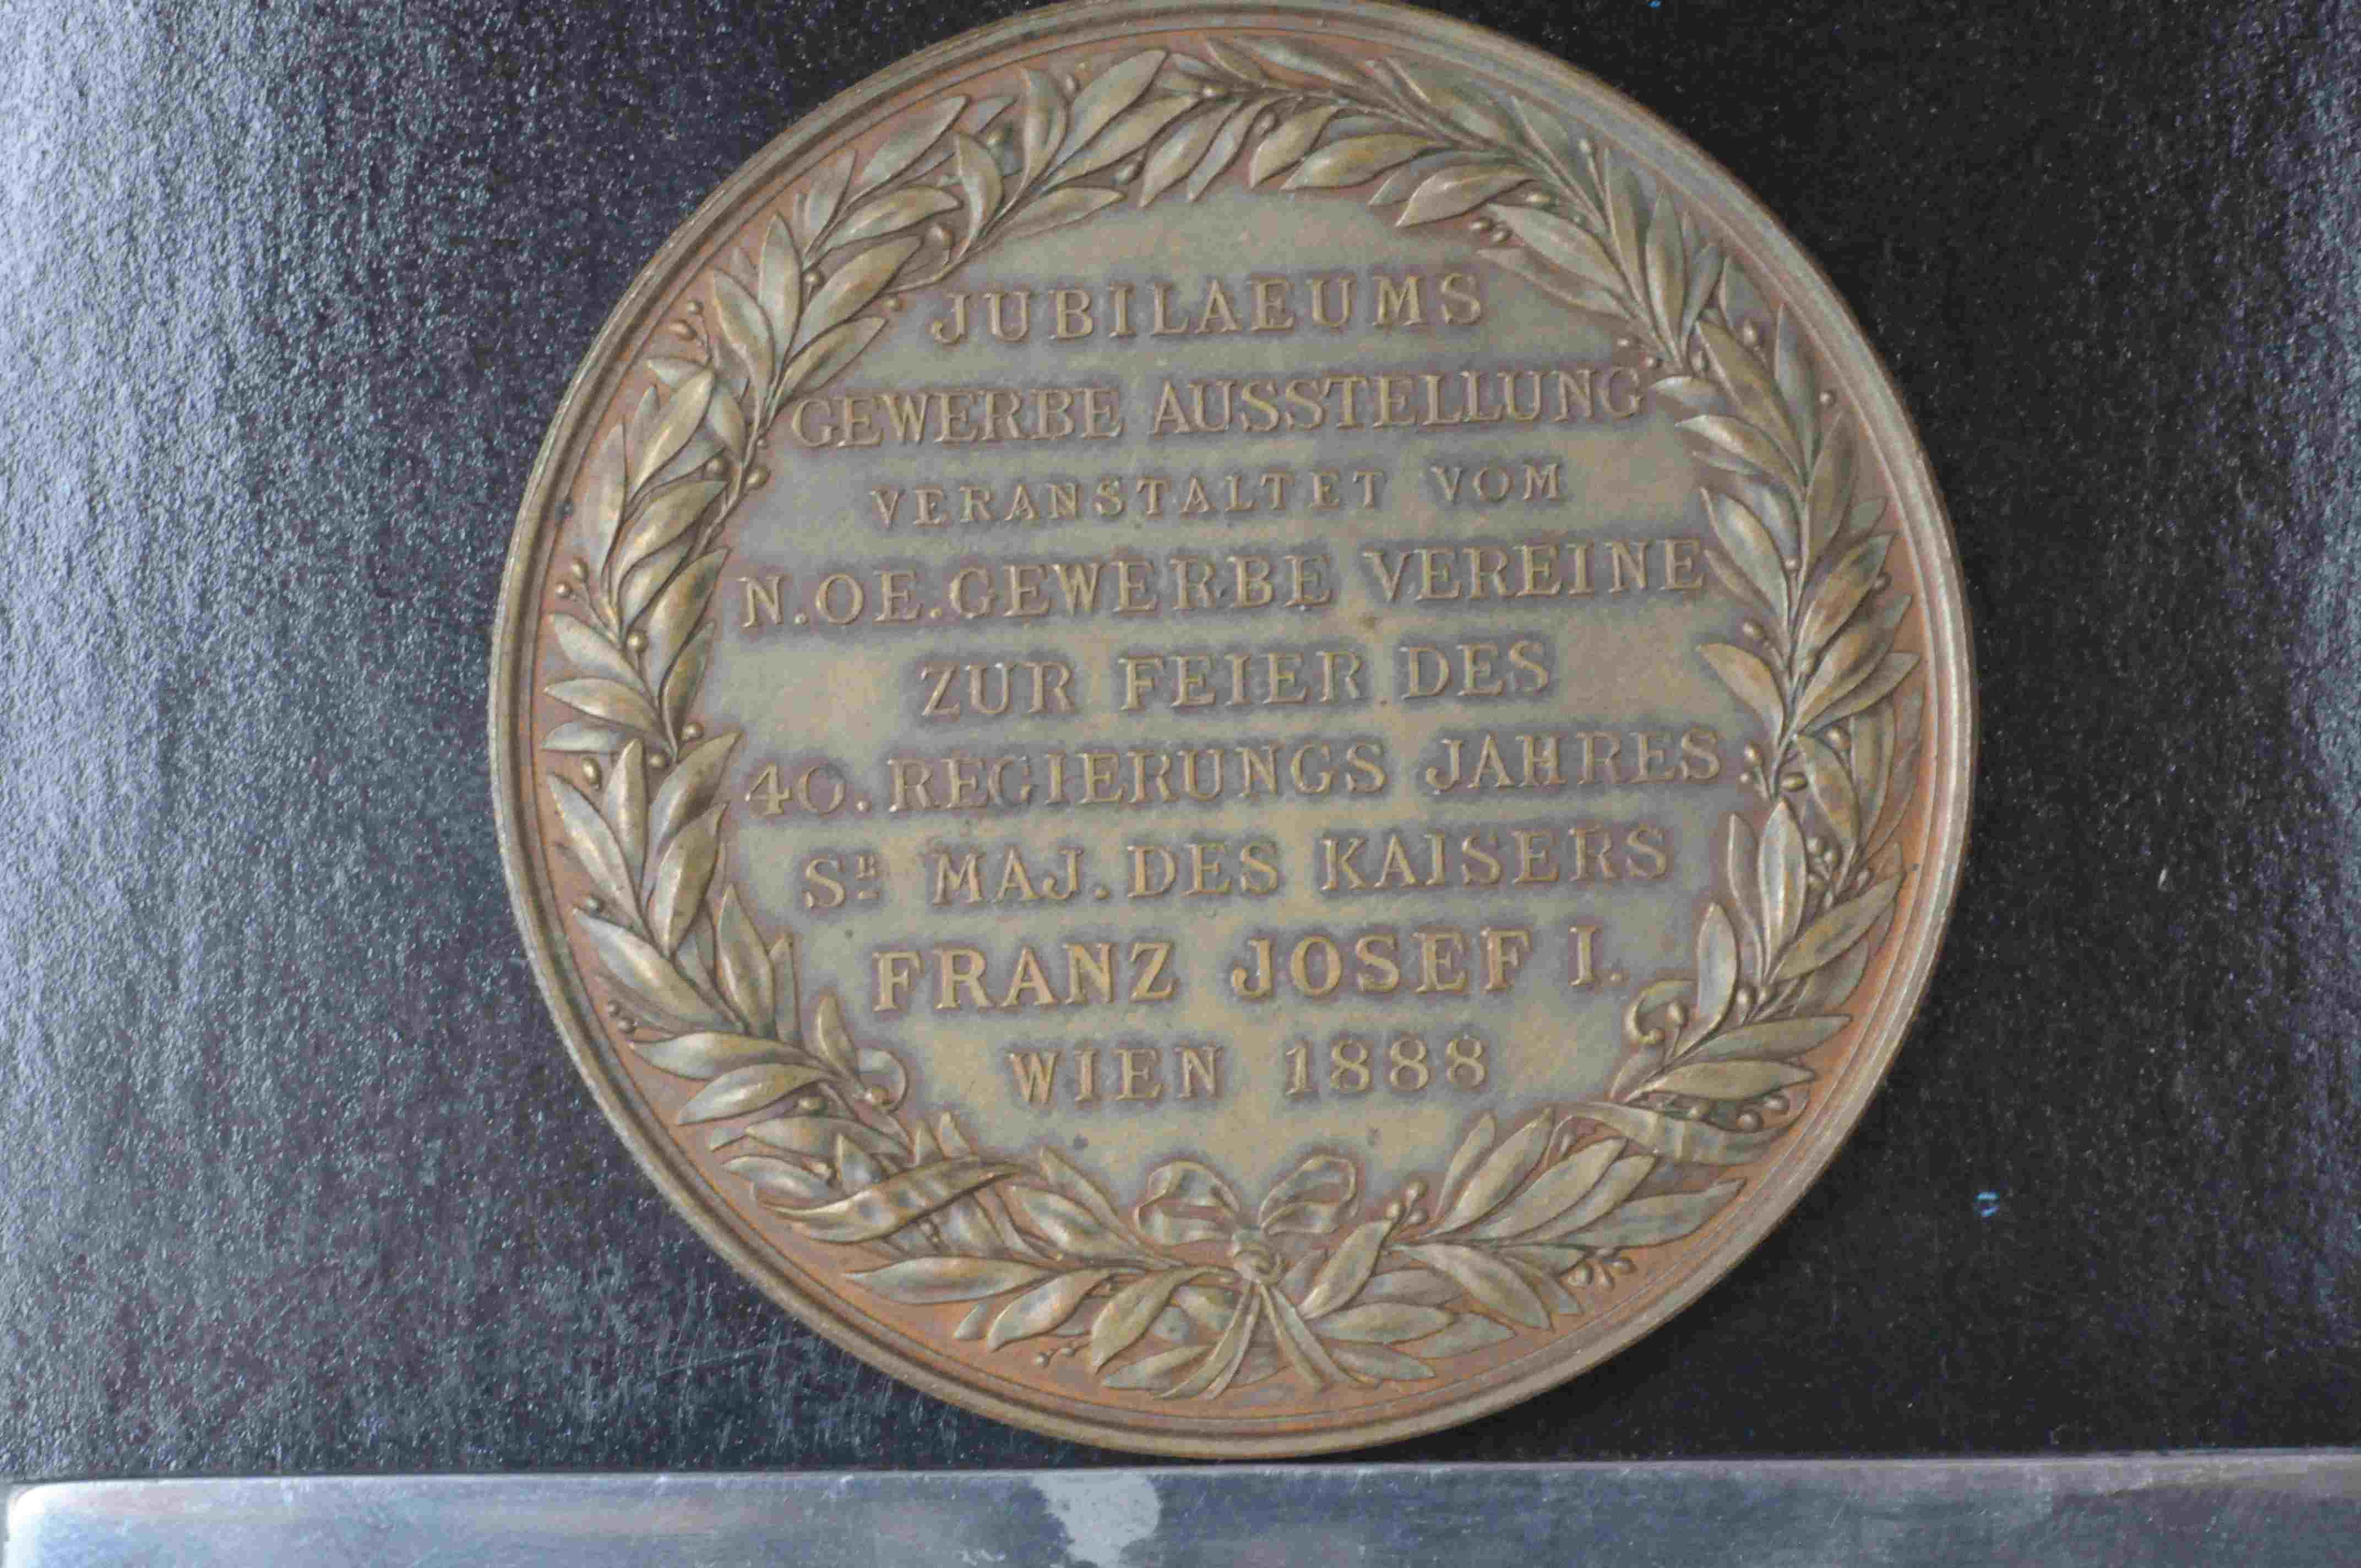 Frantz Josef Wien 1888 40 regirung